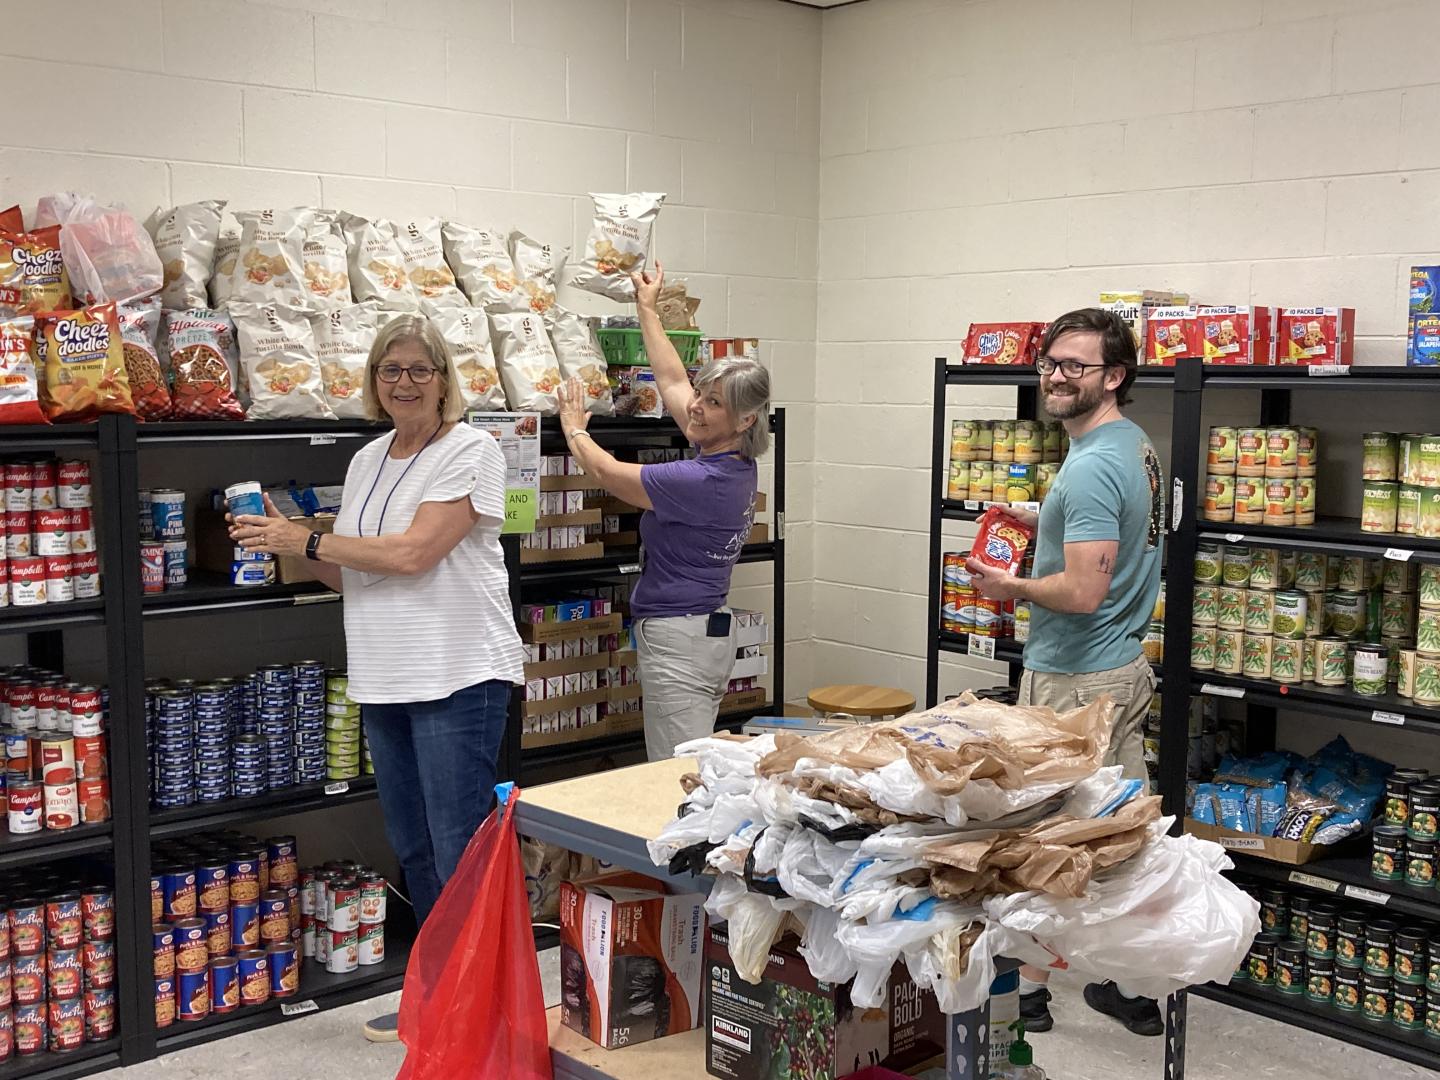 Three food pantry volunteers organizing food shelves.